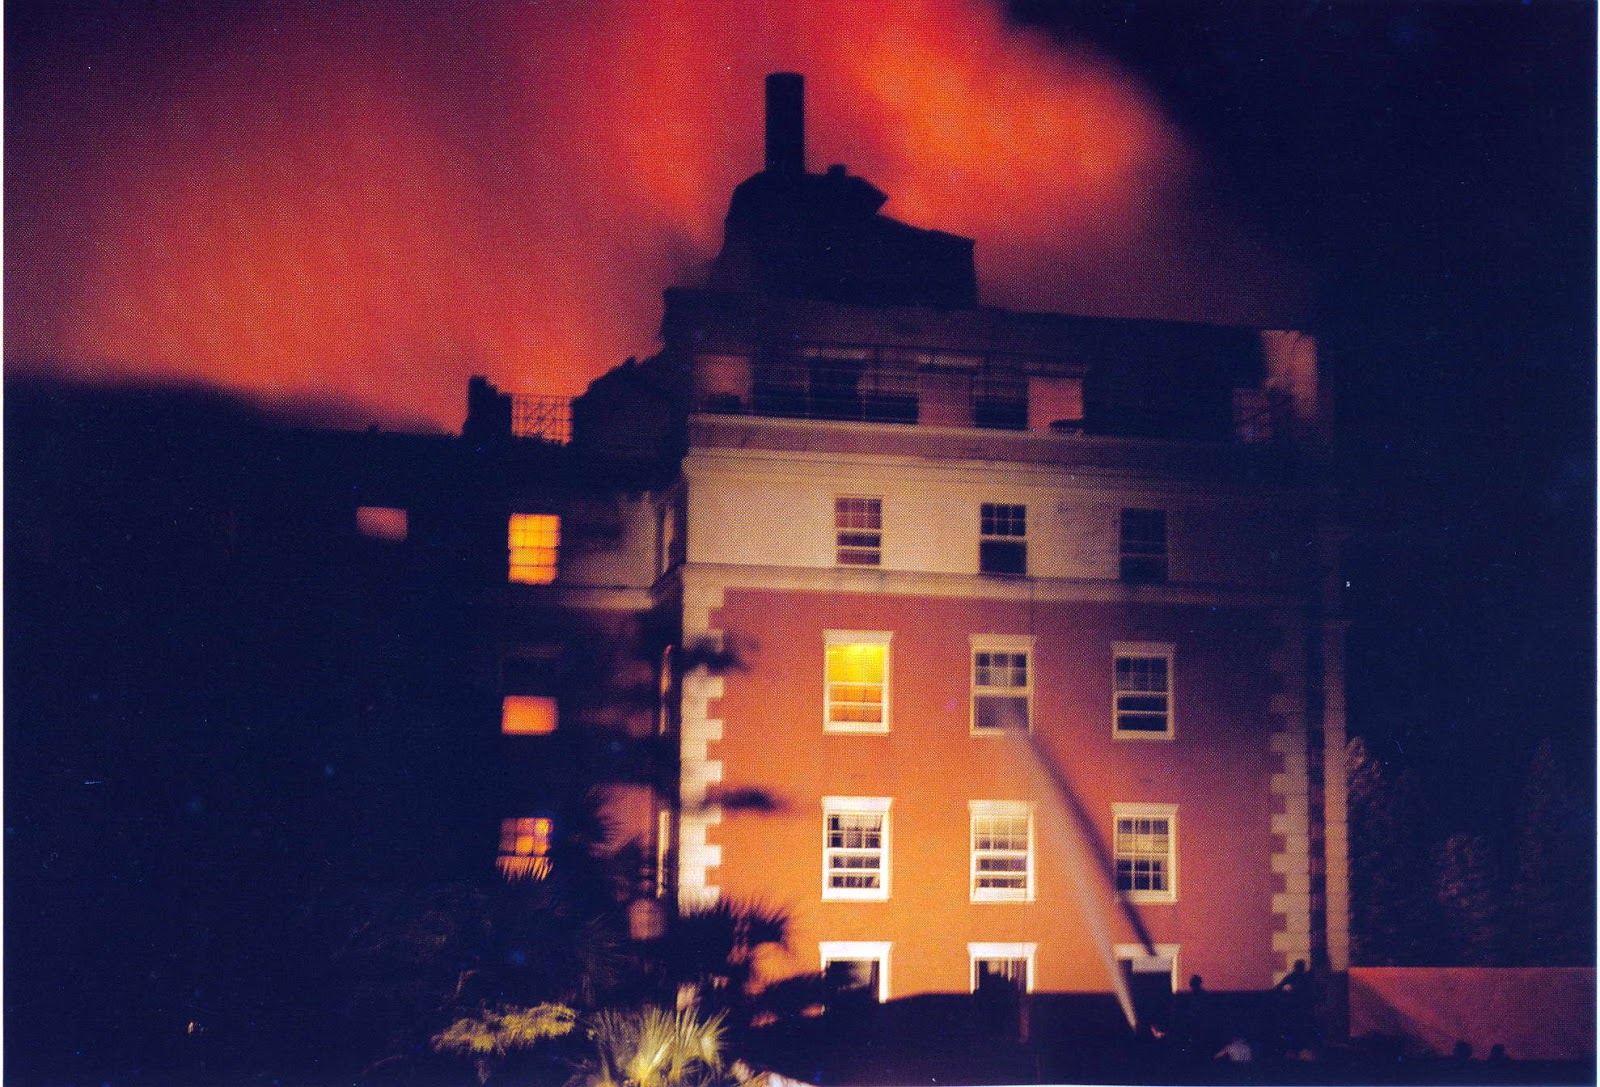 Hotel Bermudiana Fire Sept. 4th 1958